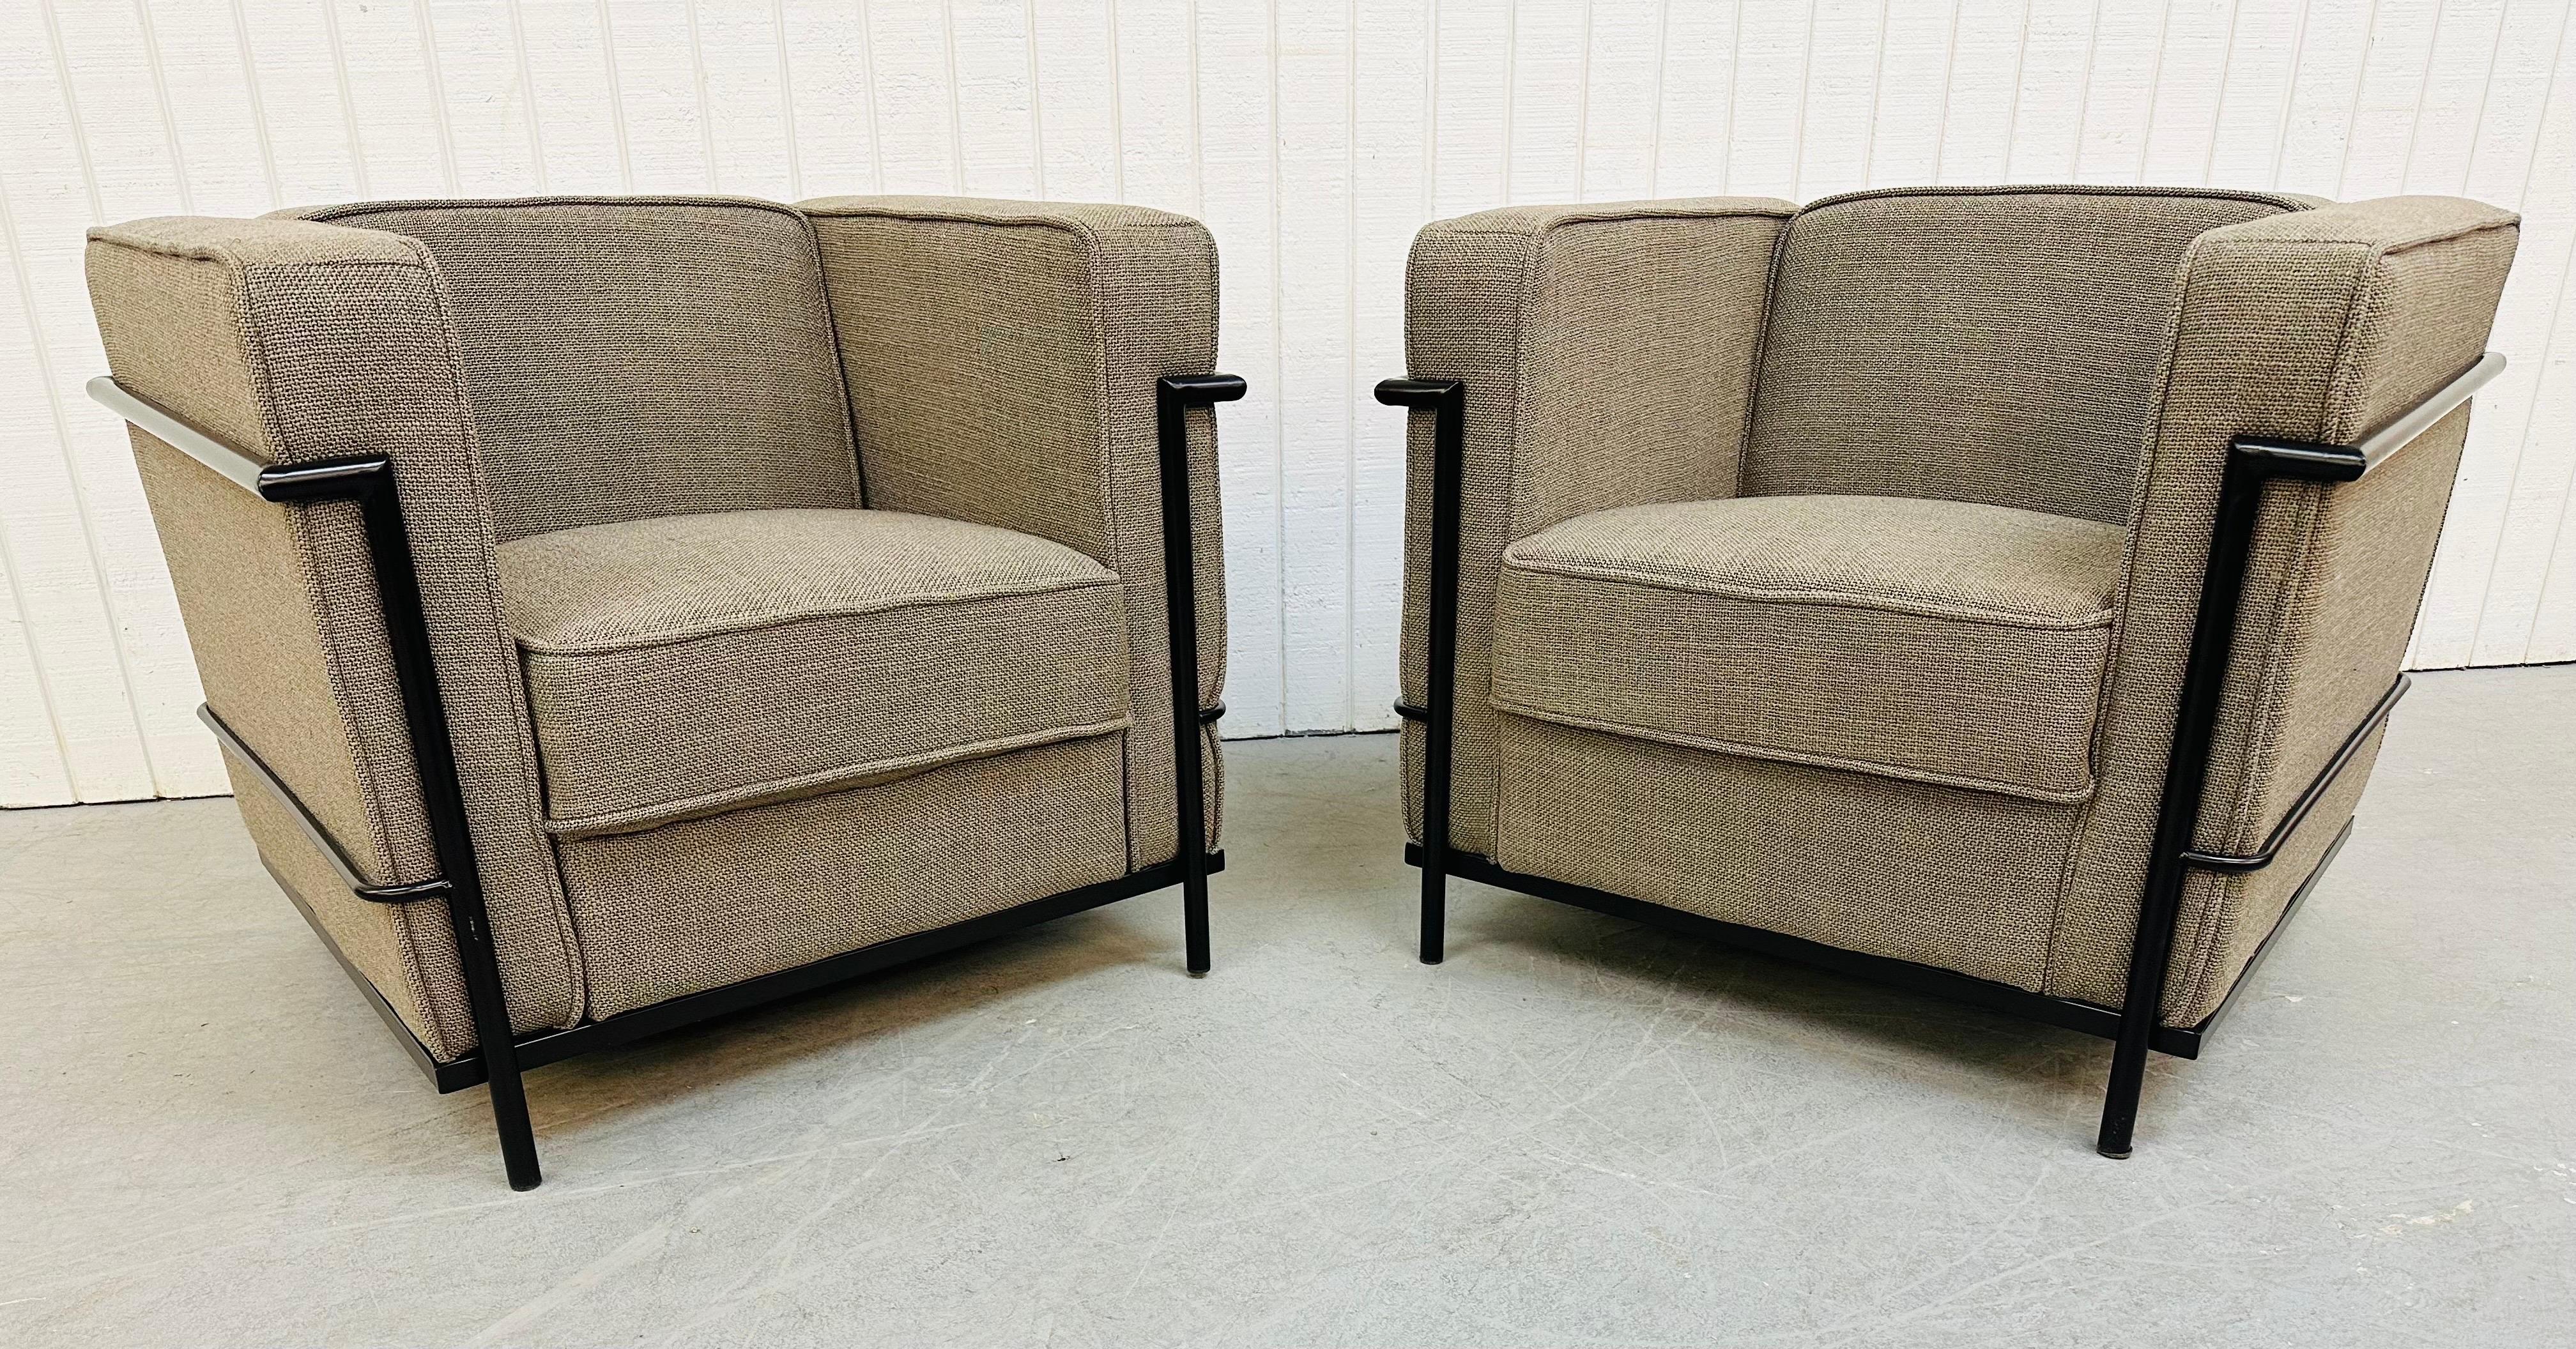 Cette annonce concerne une paire de fauteuils club modernes de style Le Corbusier. Cette reproduction emblématique de la chaise LC2 présente des coussins recouverts d'un tissu gris reposant sur une base en métal noir. Ces chaises complèteraient à